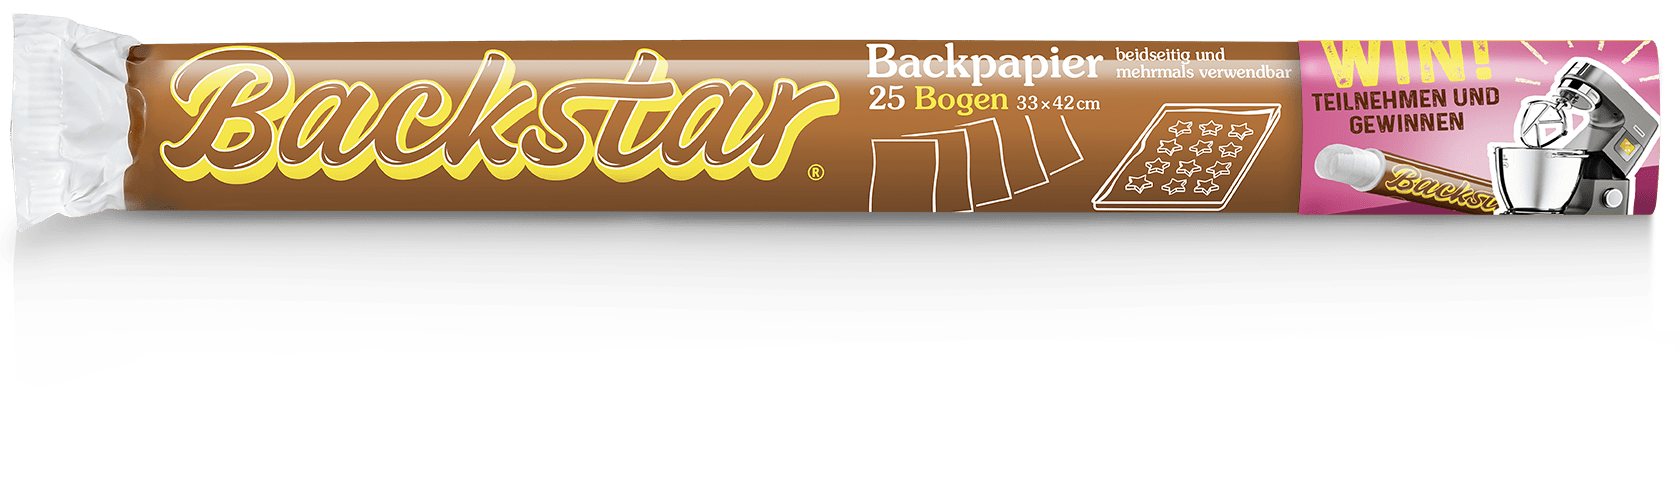 Backstar Verpackung: 25 Bogen Backpapier